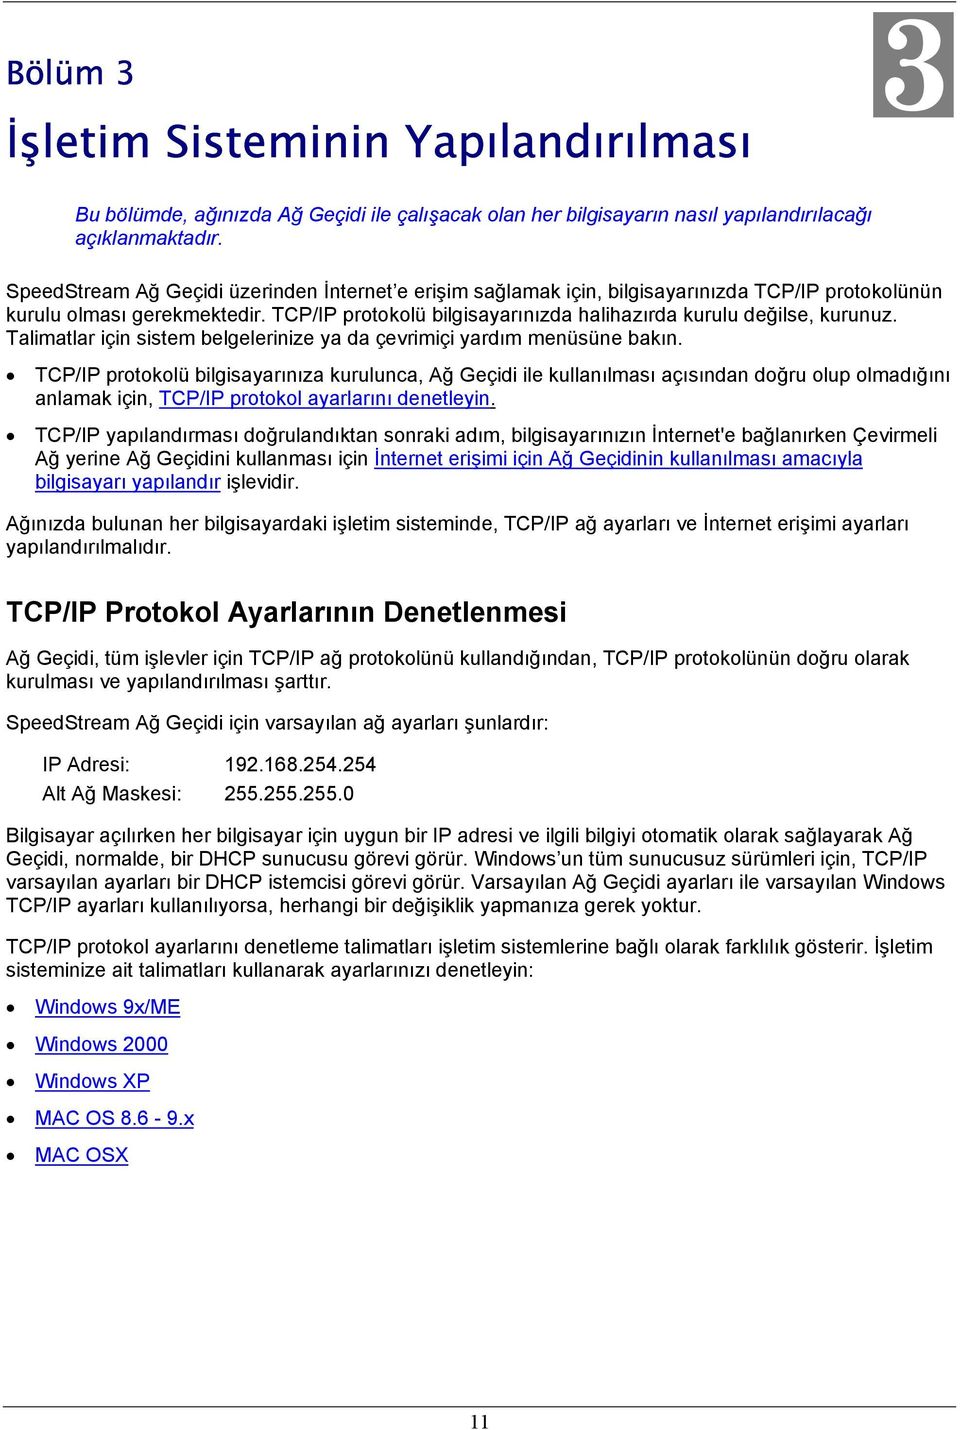 TCP/IP protokolü bilgisayarınızda halihazırda kurulu değilse, kurunuz. Talimatlar için sistem belgelerinize ya da çevrimiçi yardım menüsüne bakın.